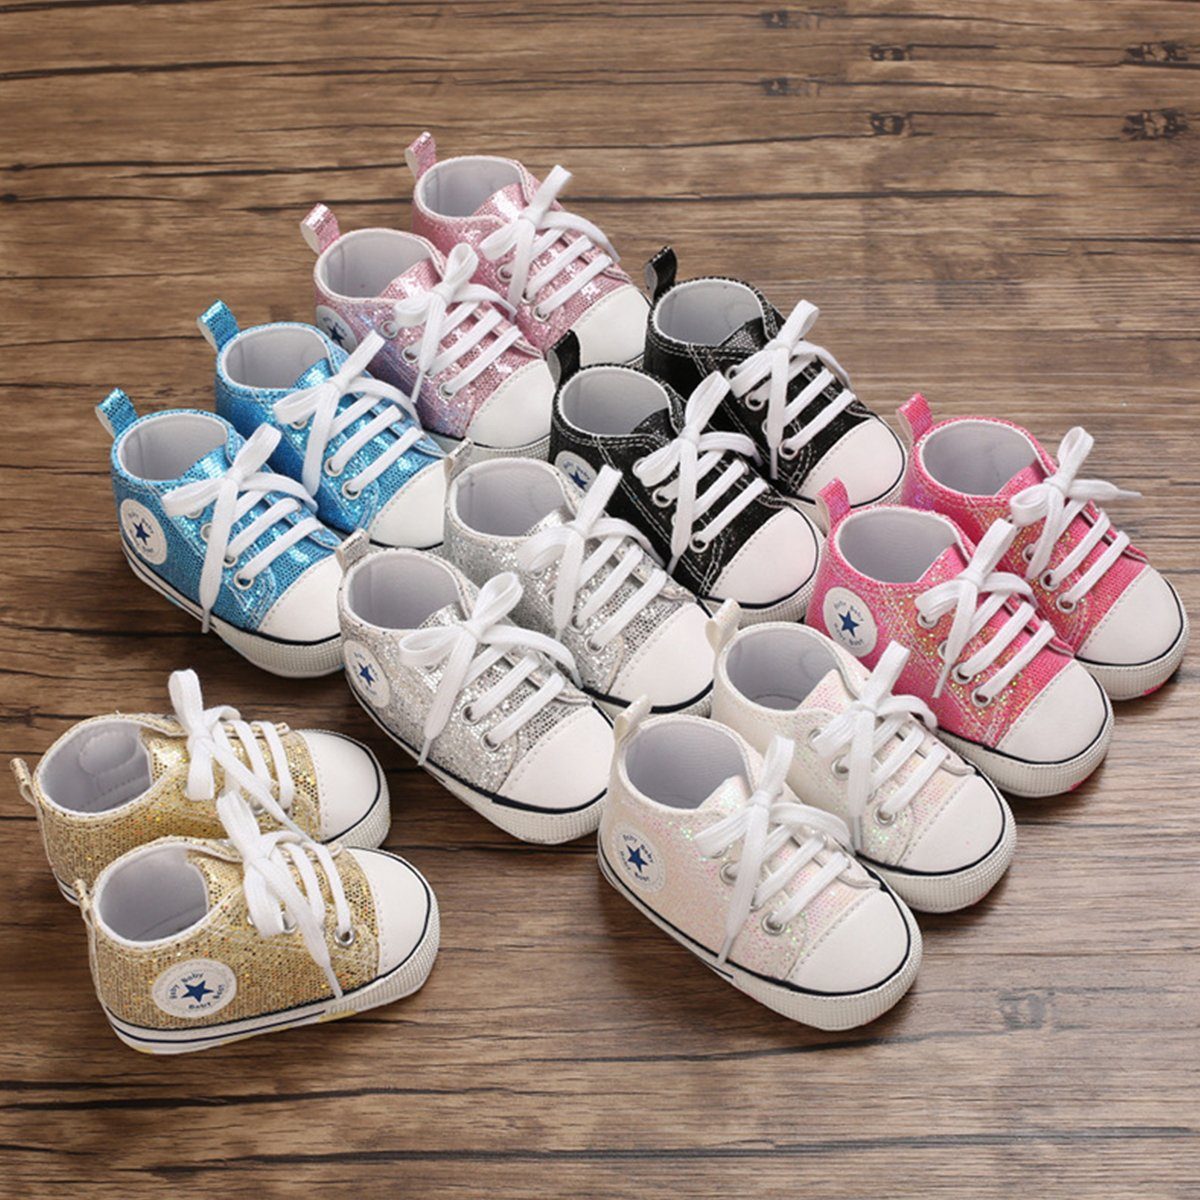 Schuhe Leinen Leichtes Sohle Glitter-Pink 0-6M Weiche Baby DEBAIJIA Lauflernschuhe Babystiefel DEBAIJIA